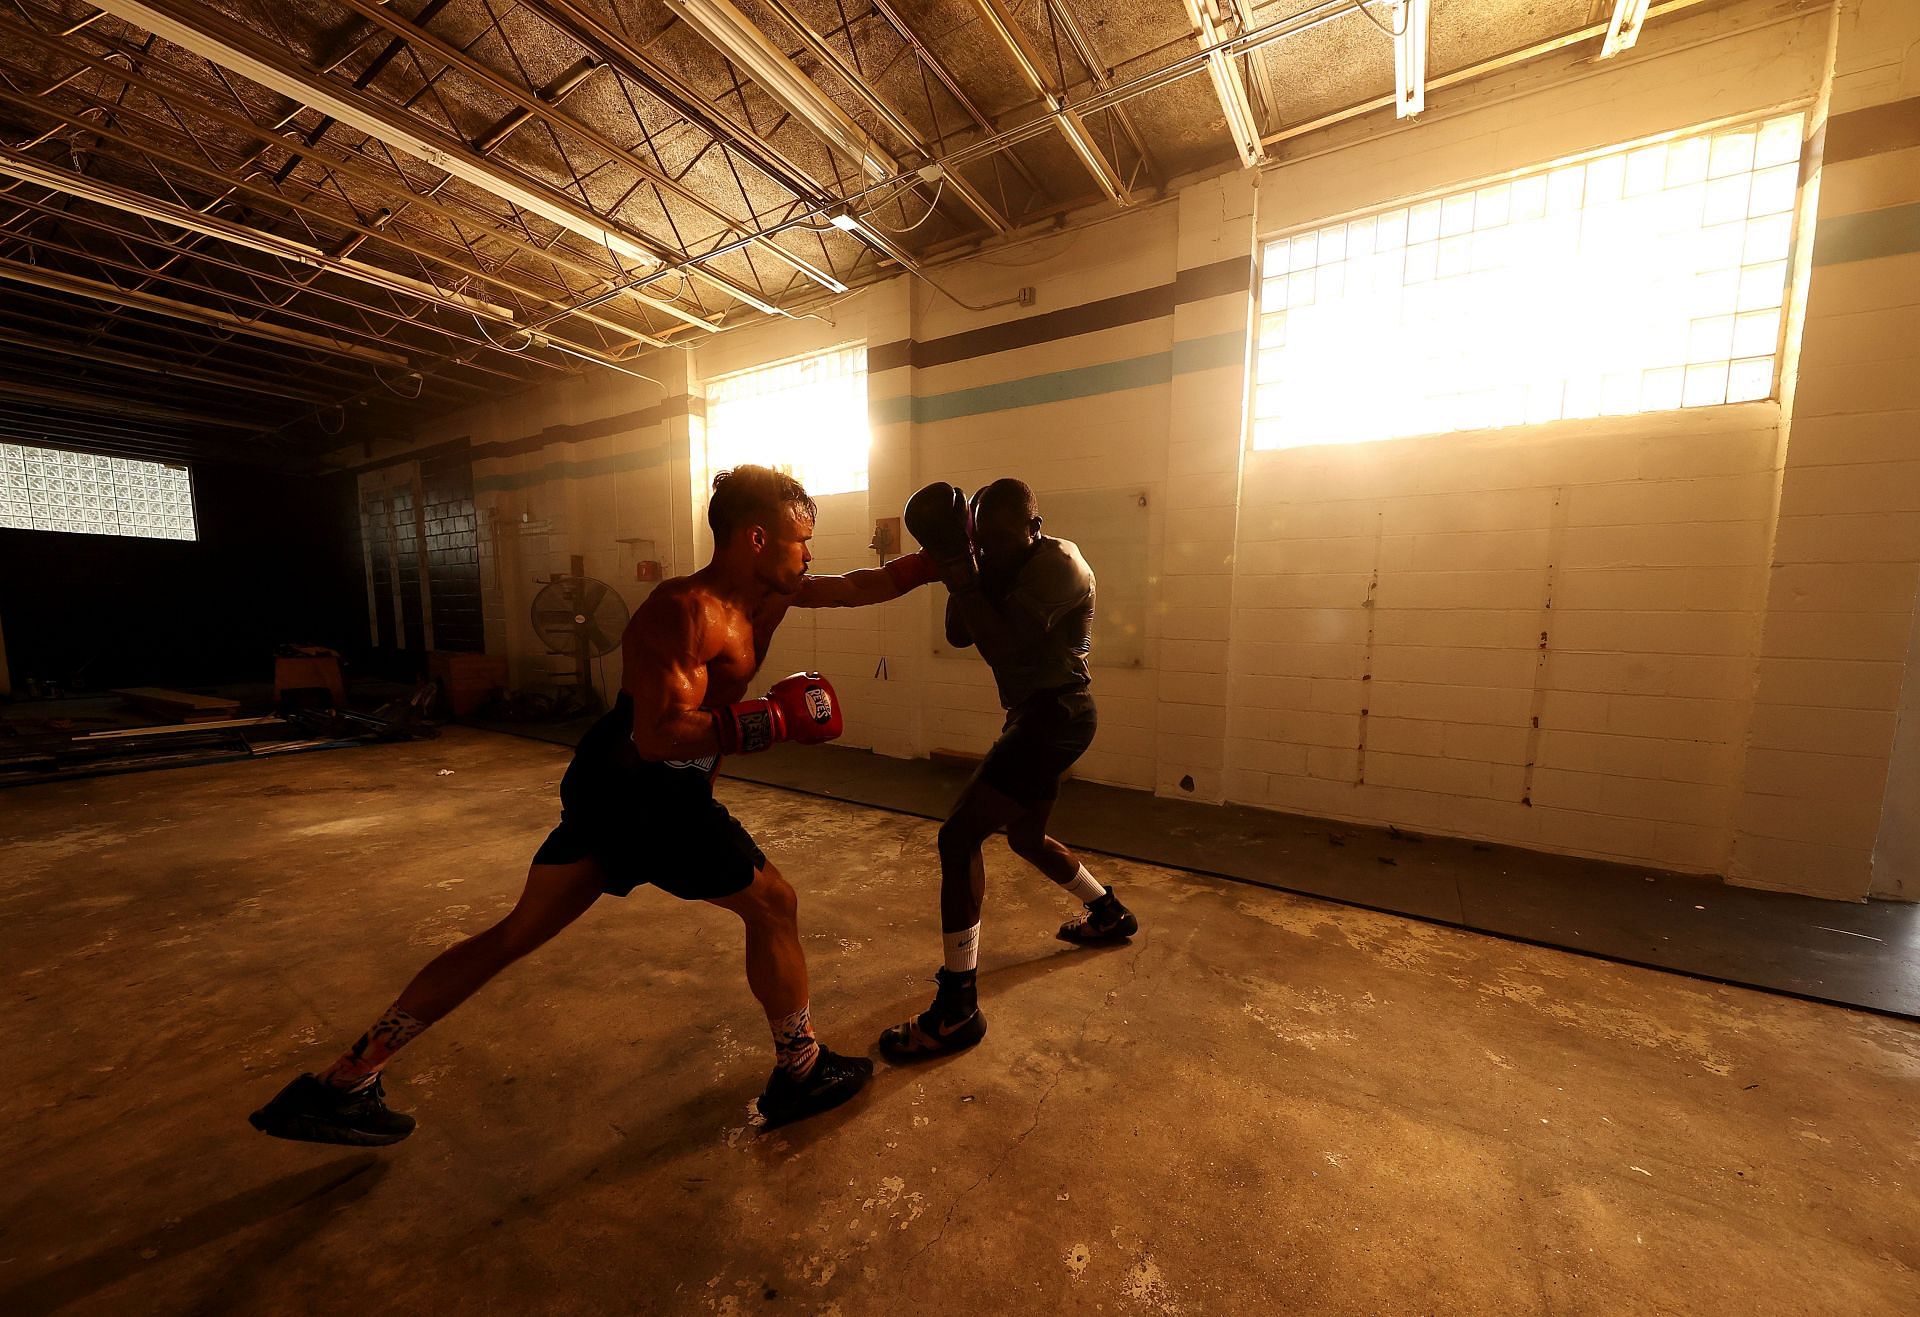 Amateur Boxers Train during Coronavirus Pandemic